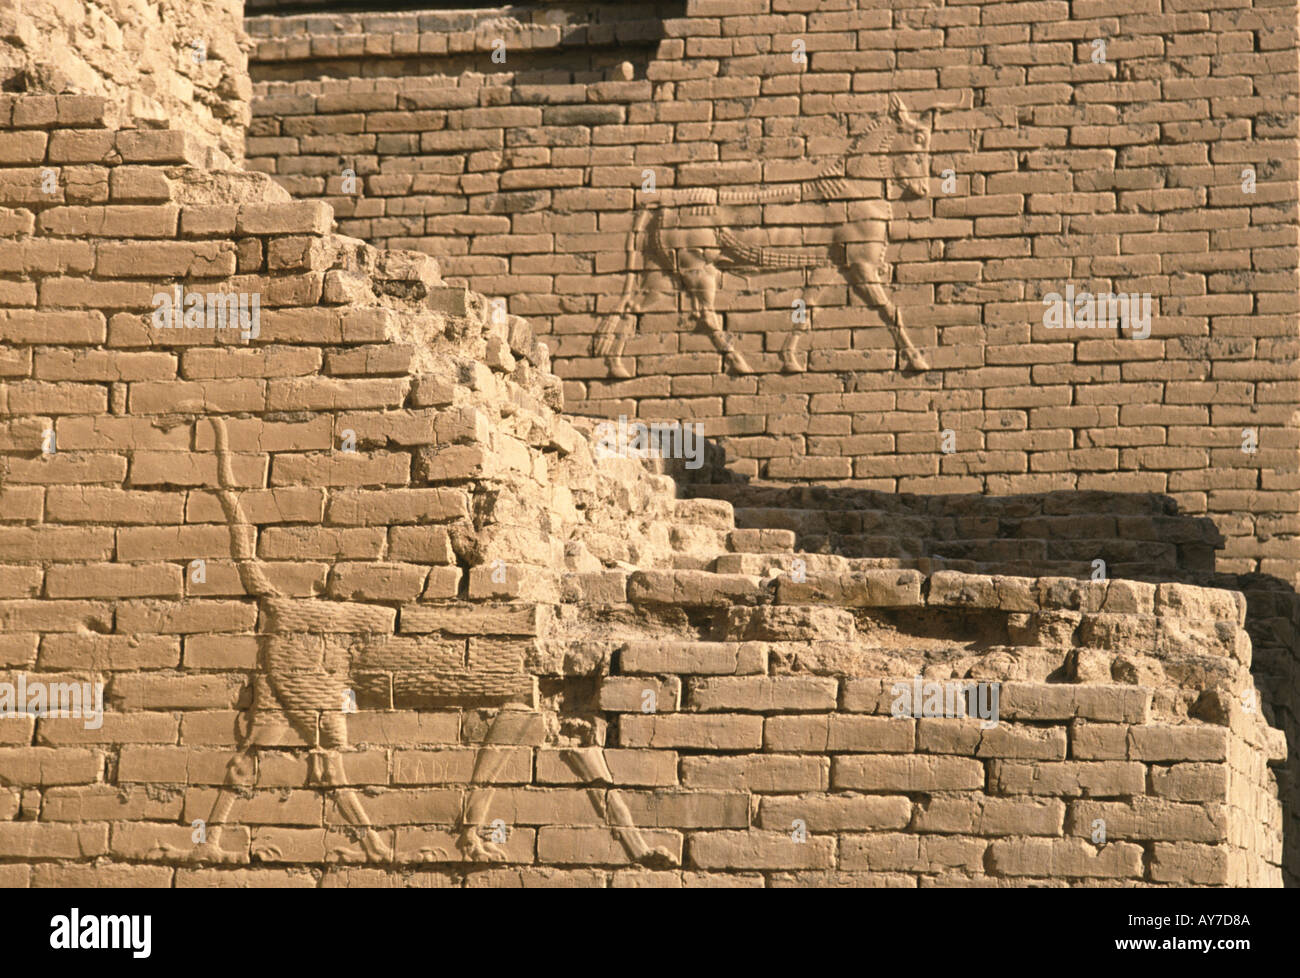 Figure di animali in bassorilievo su un muro di mattoni nell'antica città di Babilonia in Iraq Foto Stock